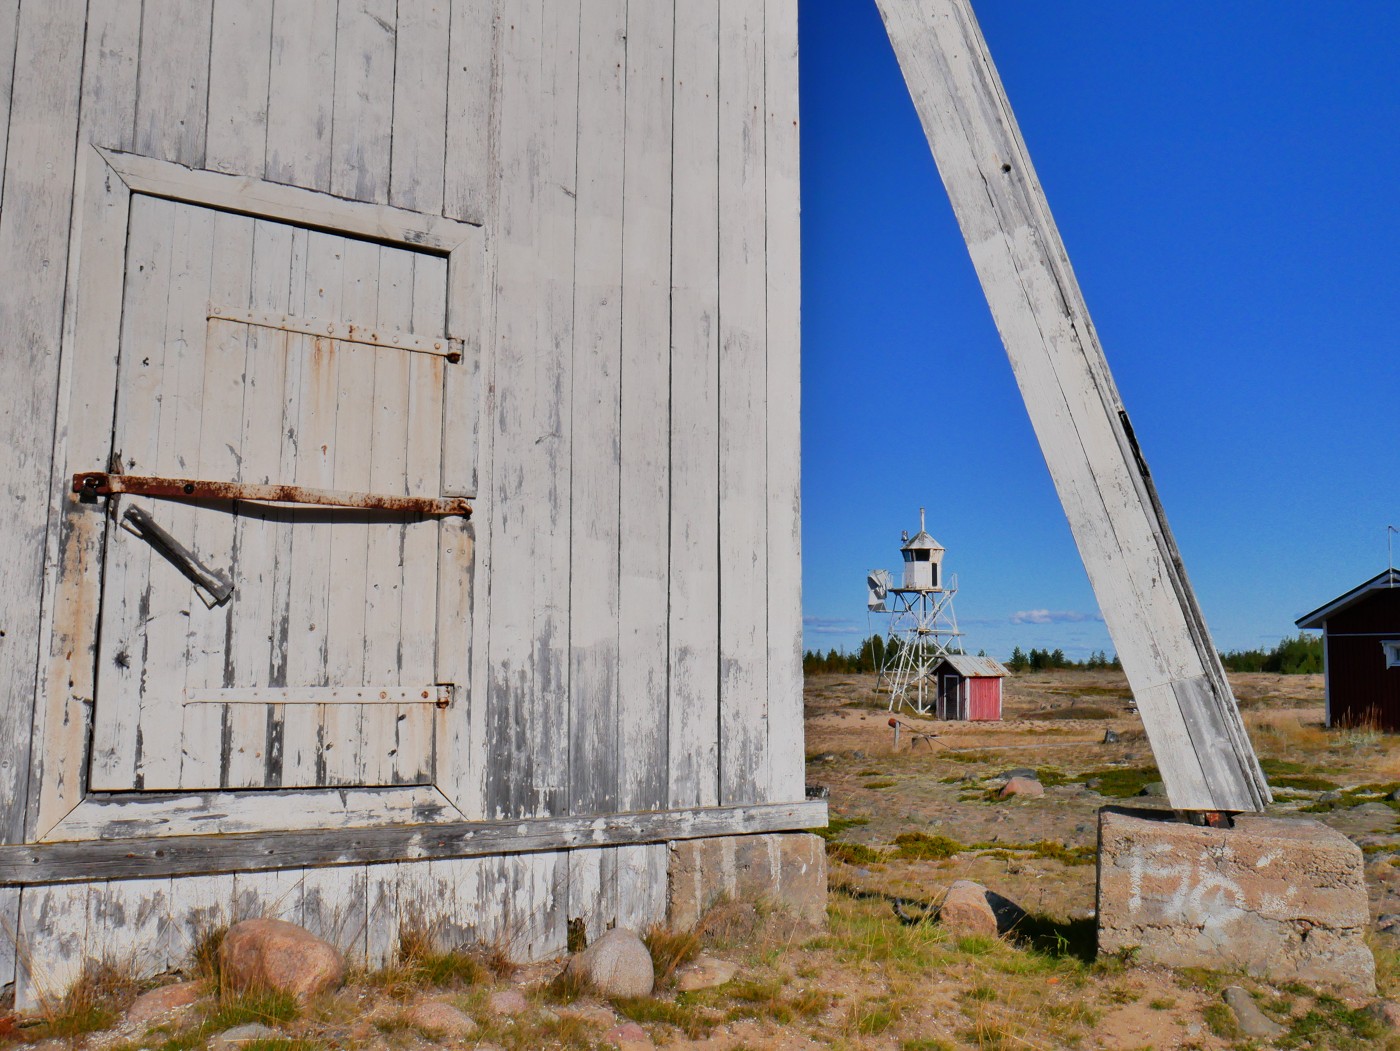 23 Keskiniemi beacon tower daymark Hailuoto Island light Finland Gulf of Bothnia